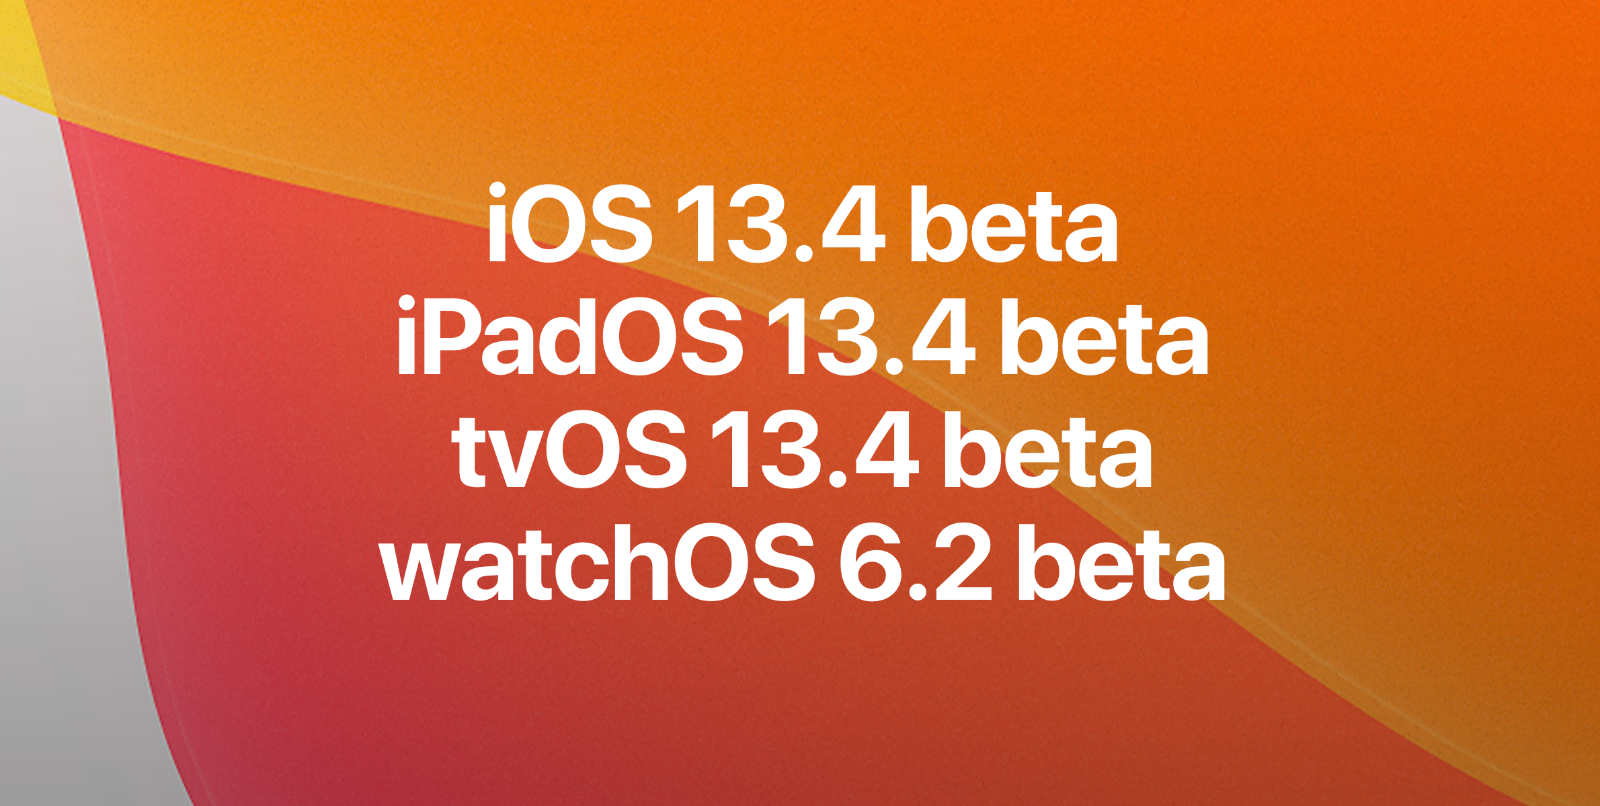 iOS 13.4 beta, iPadOS 13.4 beta, tvOS 13.4 beta, y watchOS 6.2